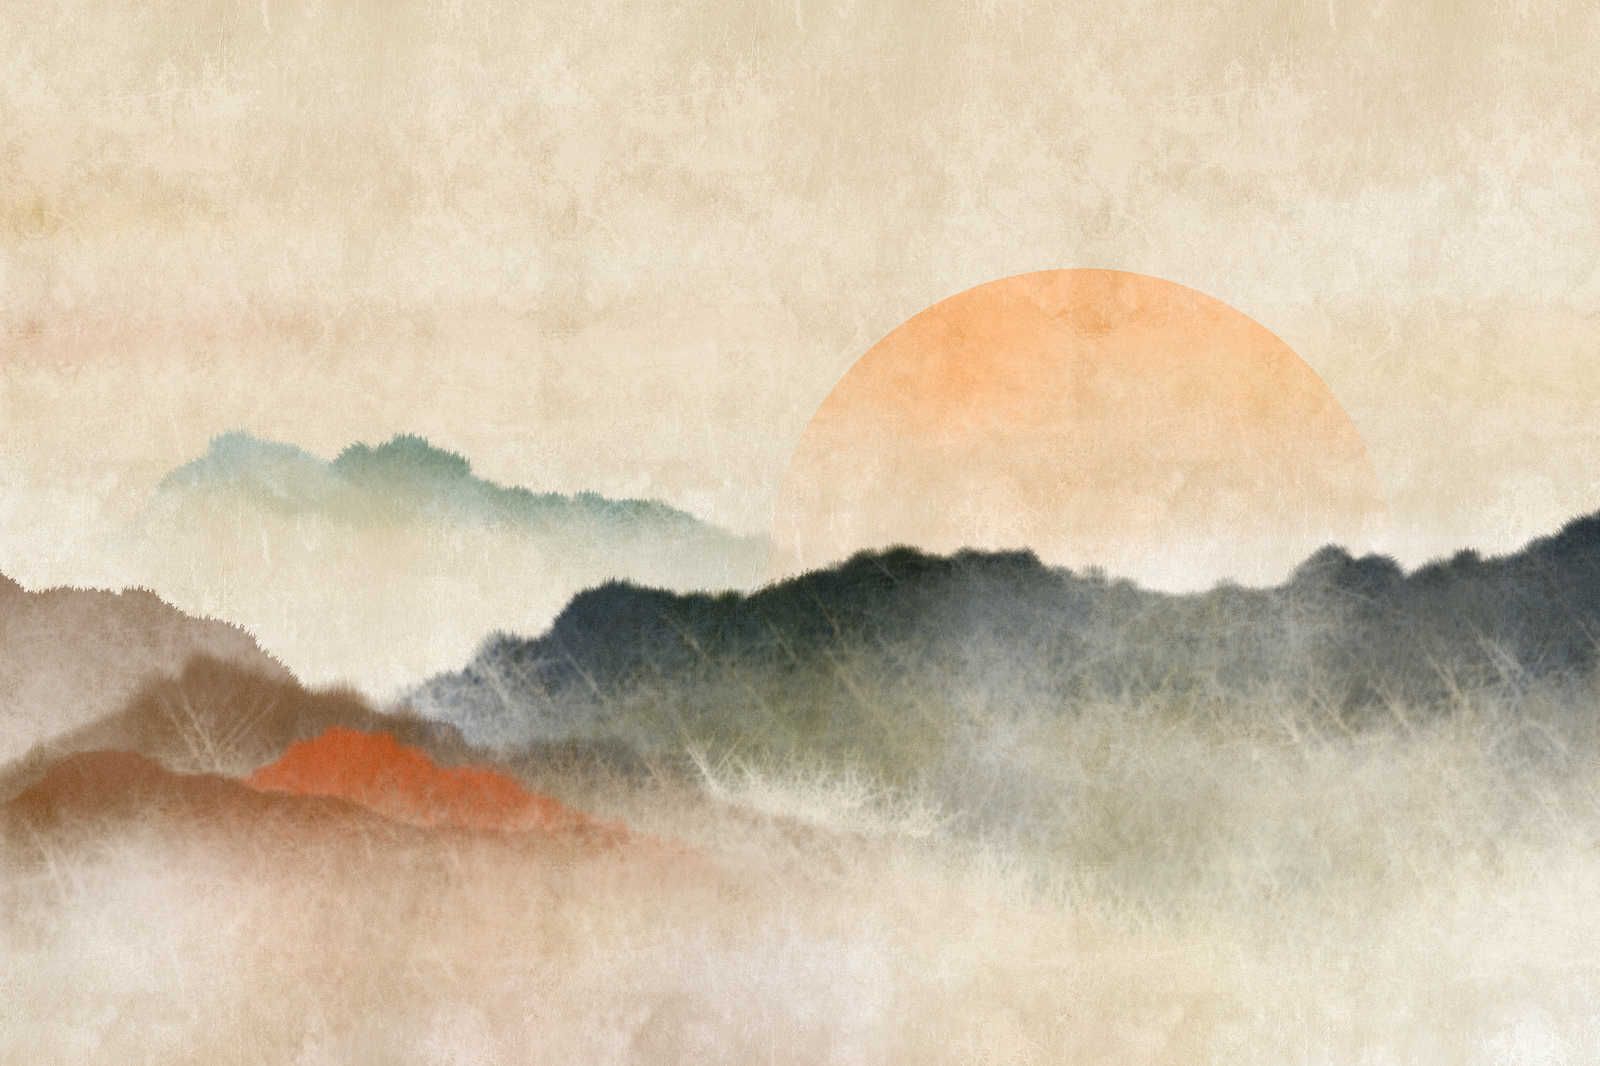             Akaishi 3 - Quadro su tela Alba, stampa d'arte in stile asiatico - 1,20 m x 0,80 m
        